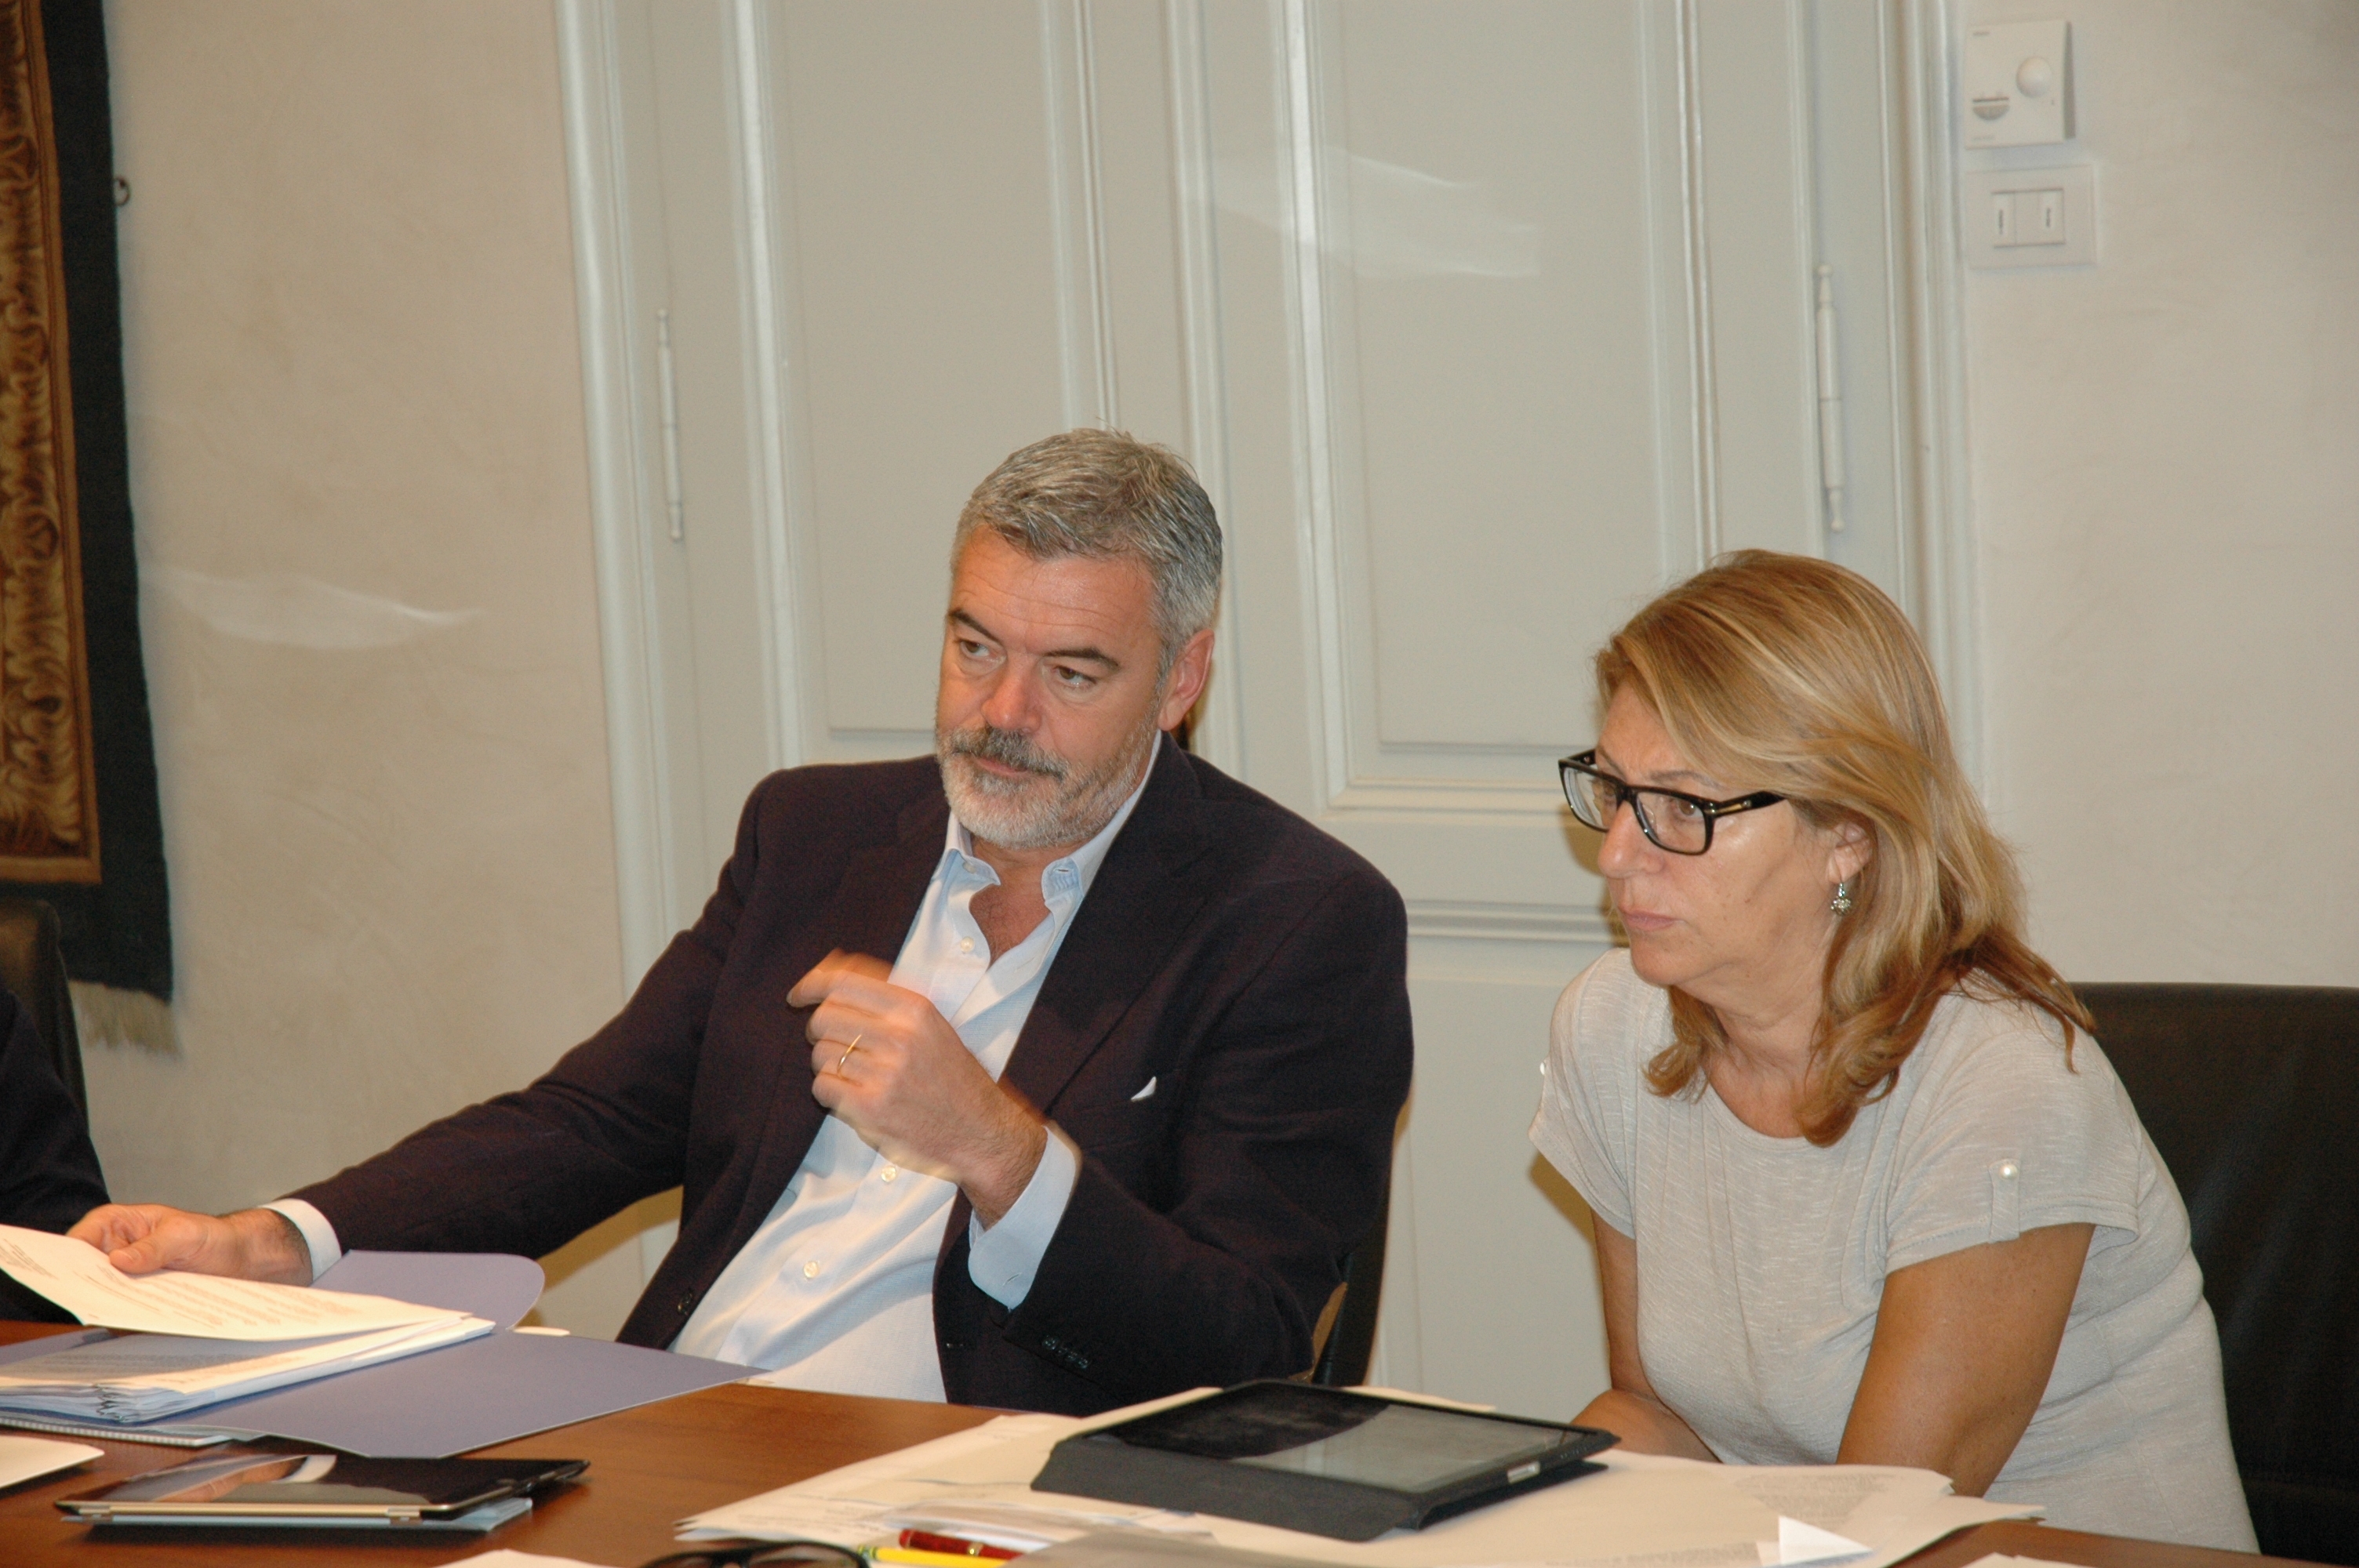 Maria Sandra Telesca (assessore regionale alle Politiche sociali) con Paolo Panontin (assessore regionale per le Autonomie locali) durante la seduta di Giunta regionale (Trieste, 09/08/13)